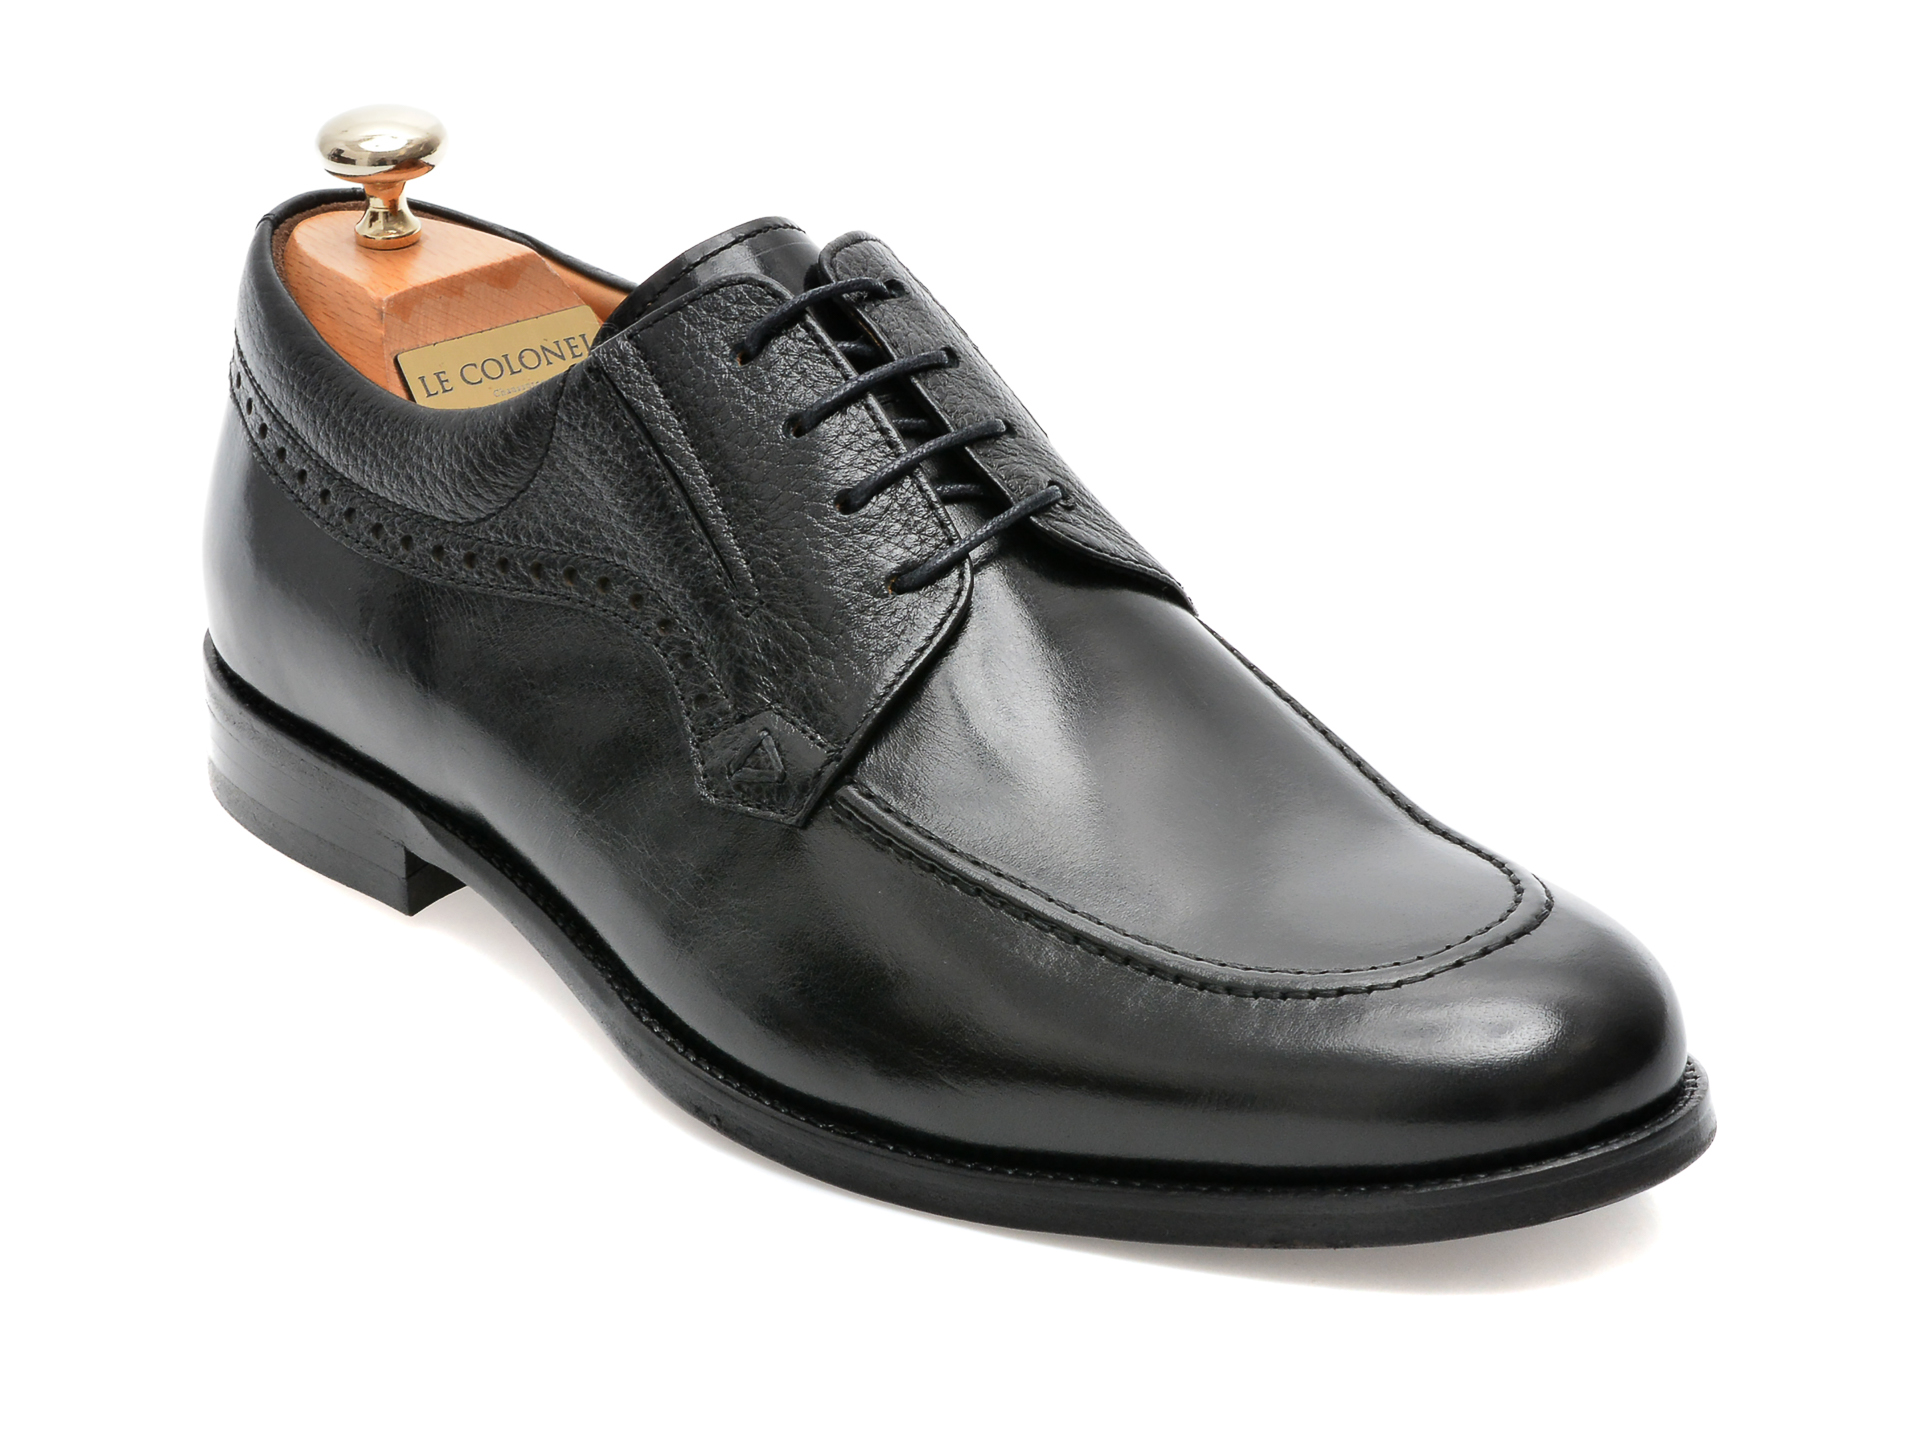 Pantofi LE COLONEL negri, 44746, din piele naturala barbati 2023-03-20